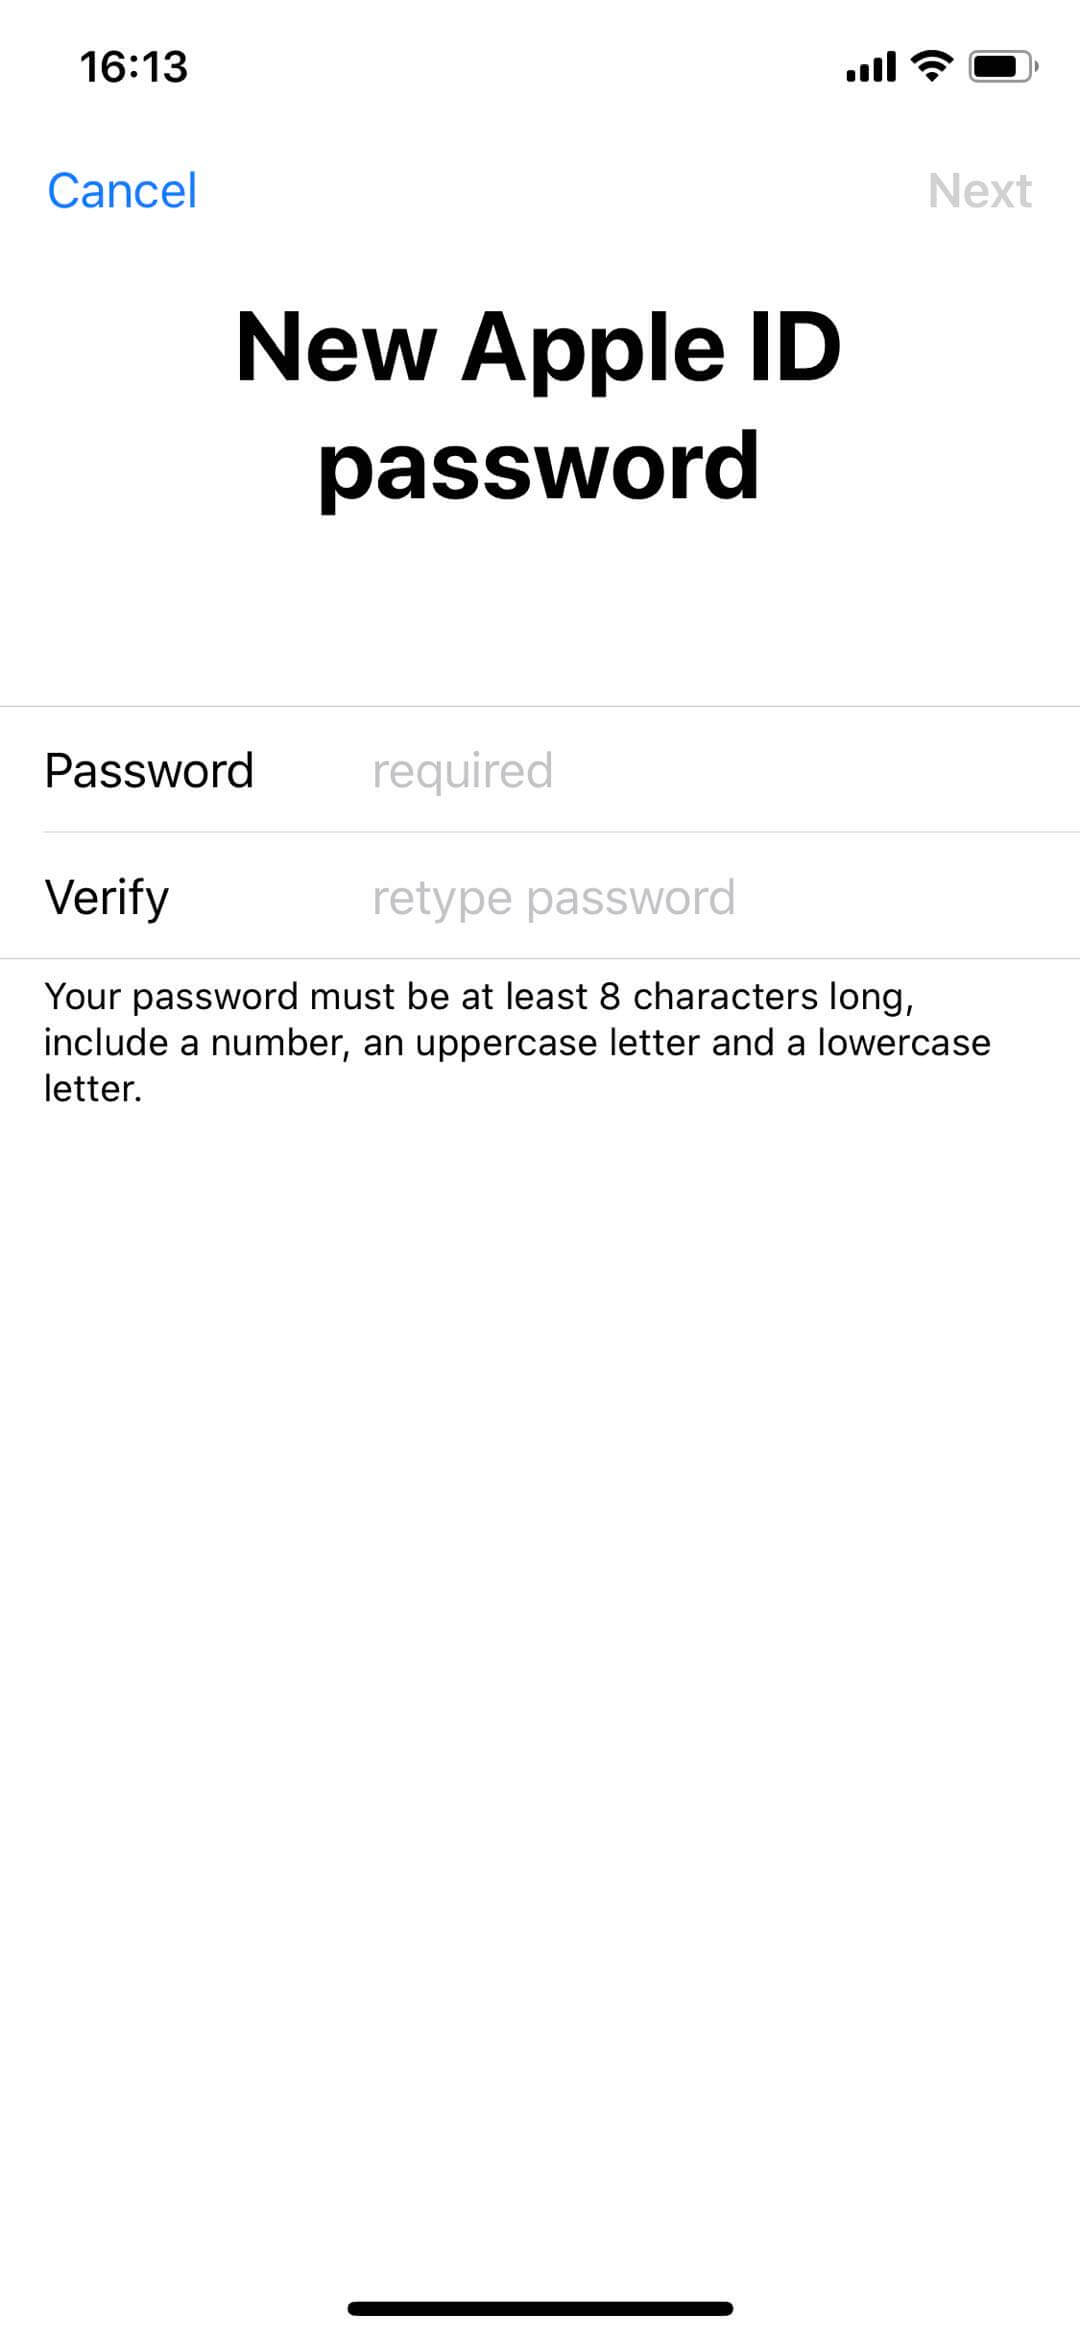 how to reset apple computer password